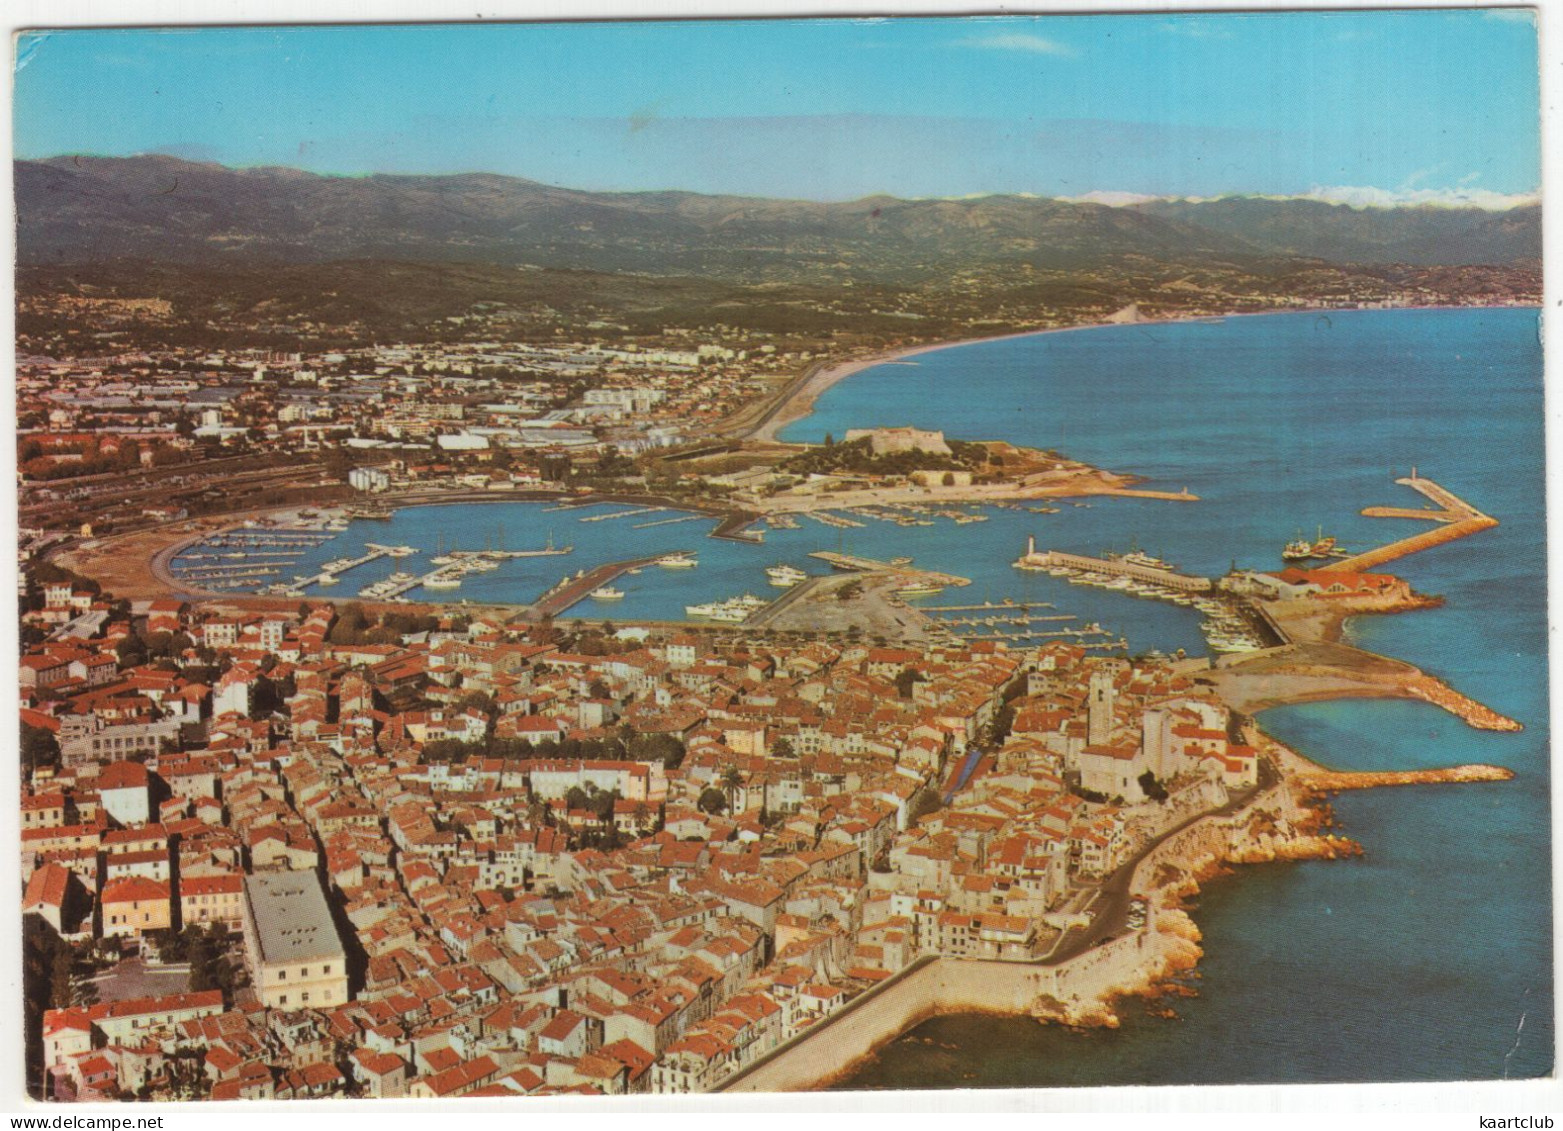 Antibes - Le Port Vauban - (France) - 1976 - Antibes - Oude Stad